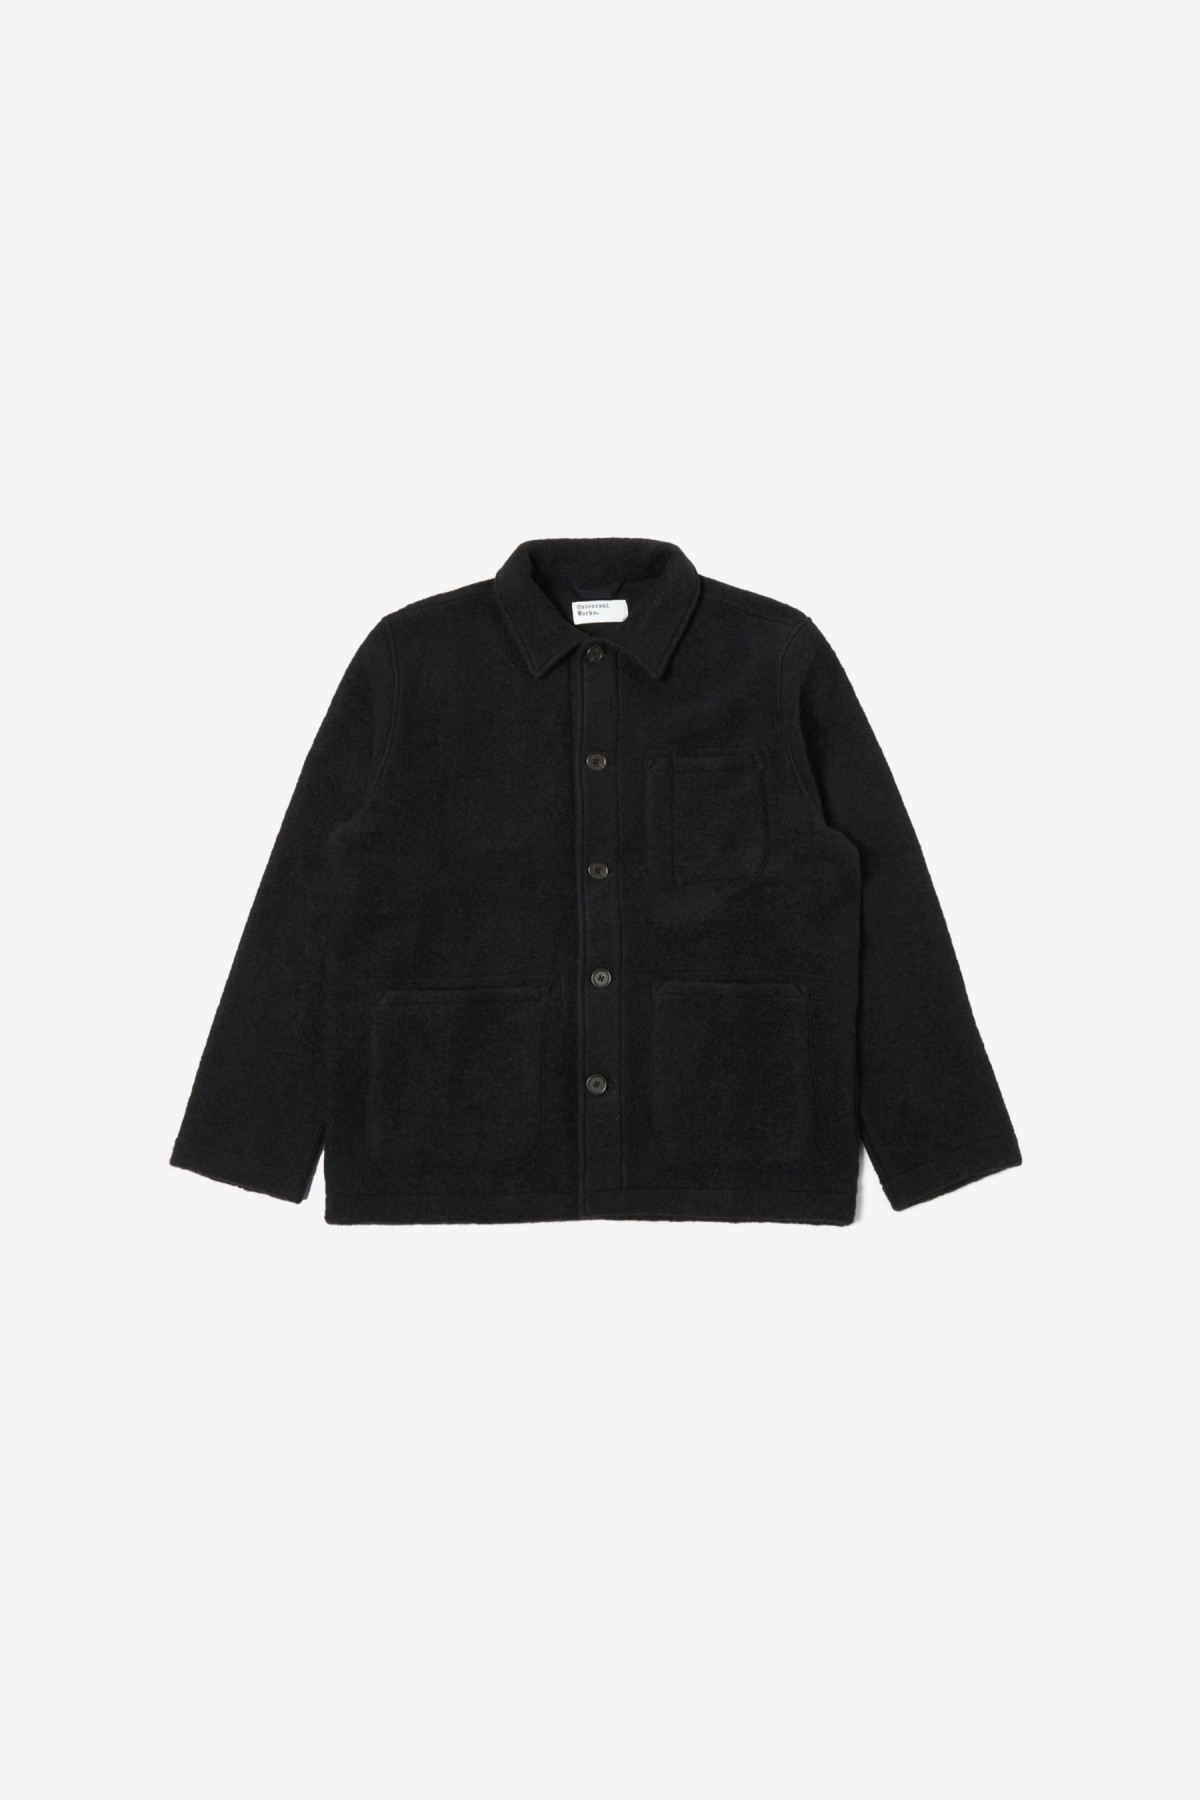 Field Jacket in Black - Universal Works | Afura Store